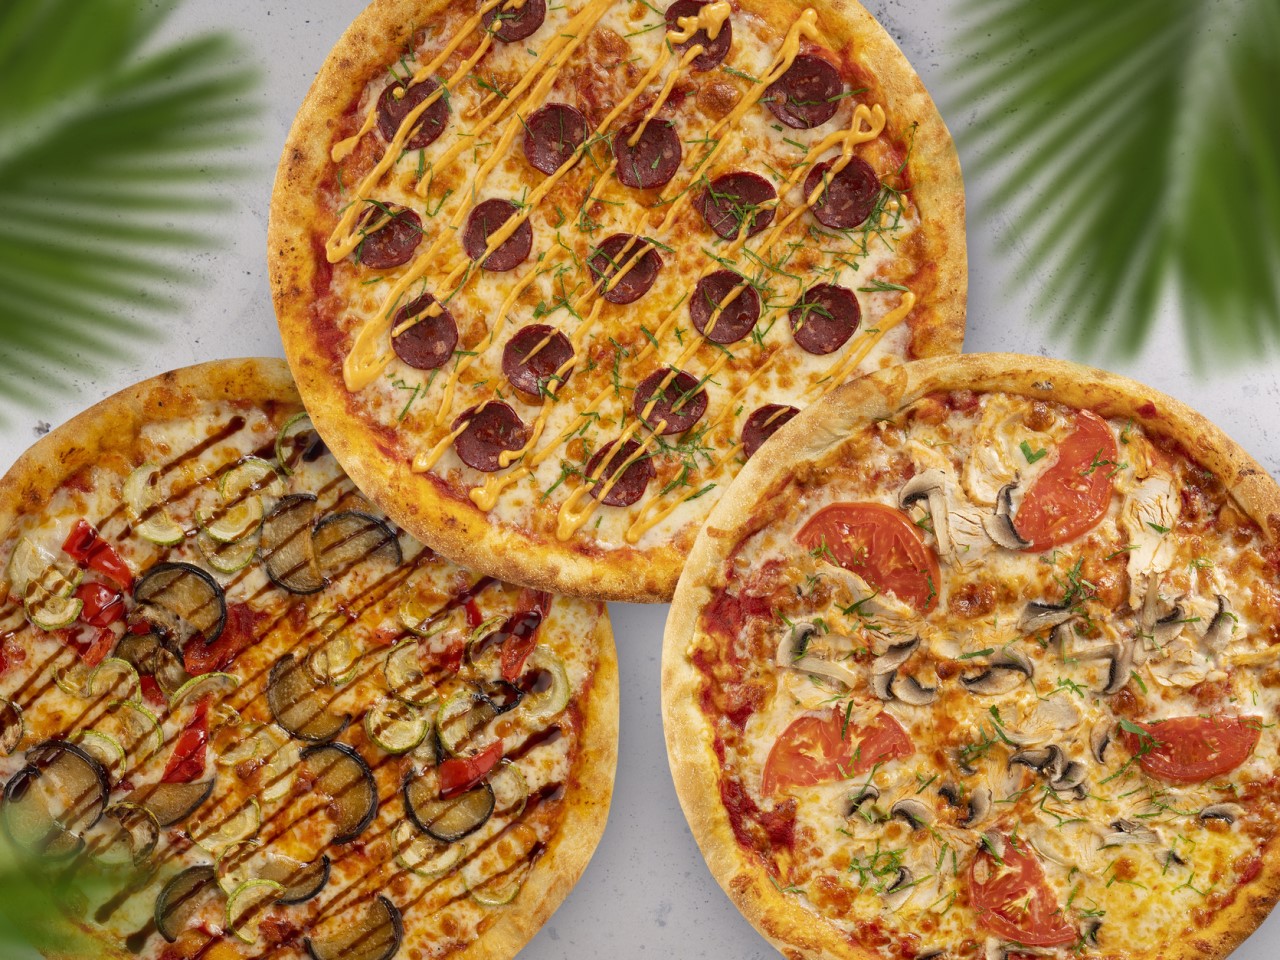 три пиццы одна с фруктами одна с овощами и соусом одна с мясом и сыром фото 66